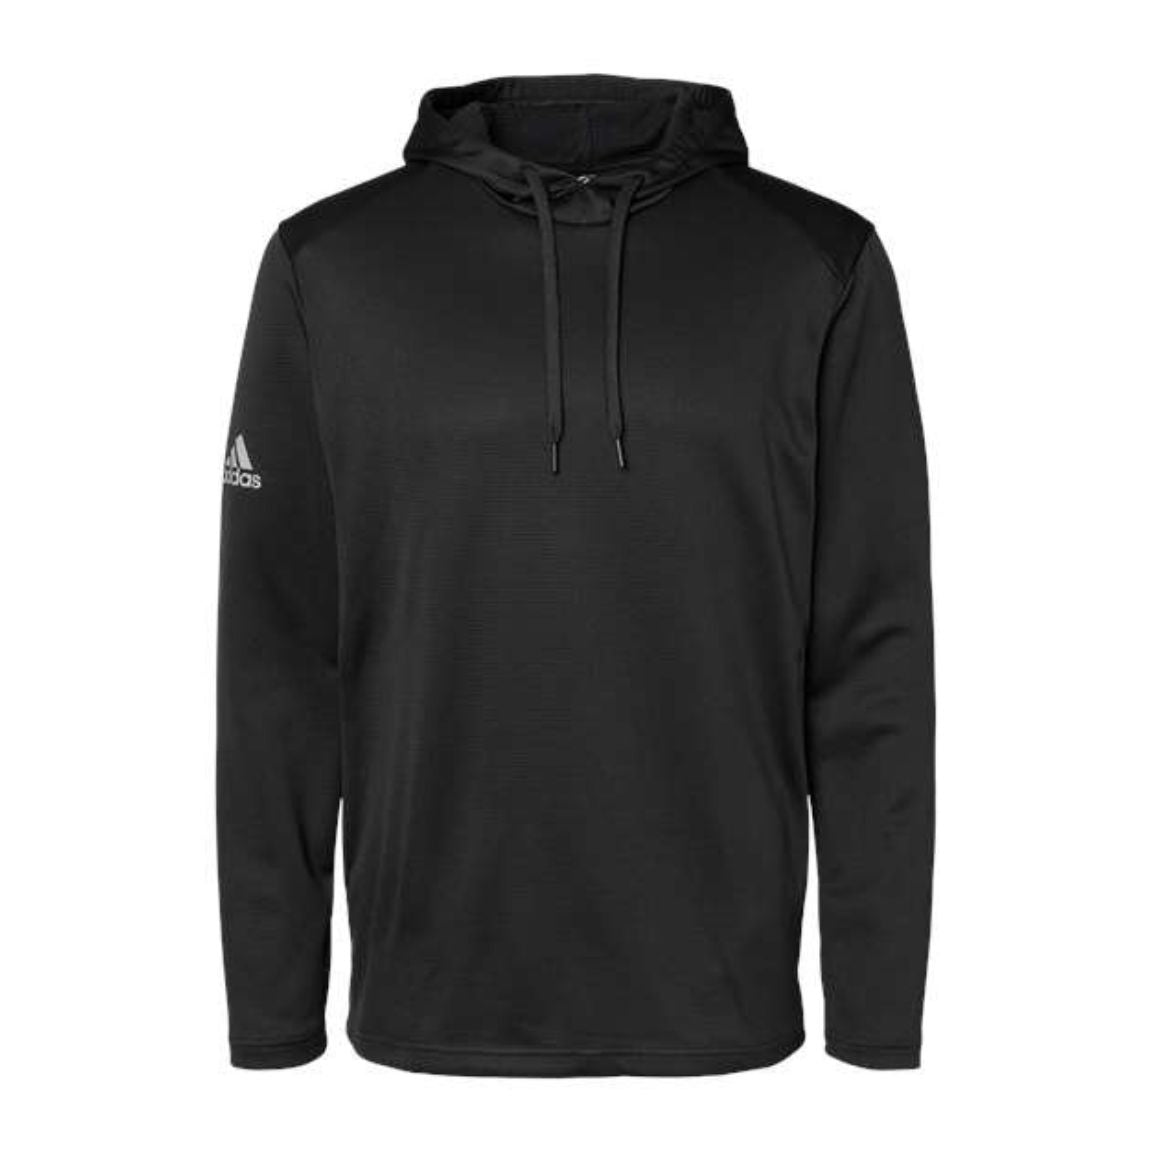 Adidas - Textured Mixed Media Hooded Sweatshirt